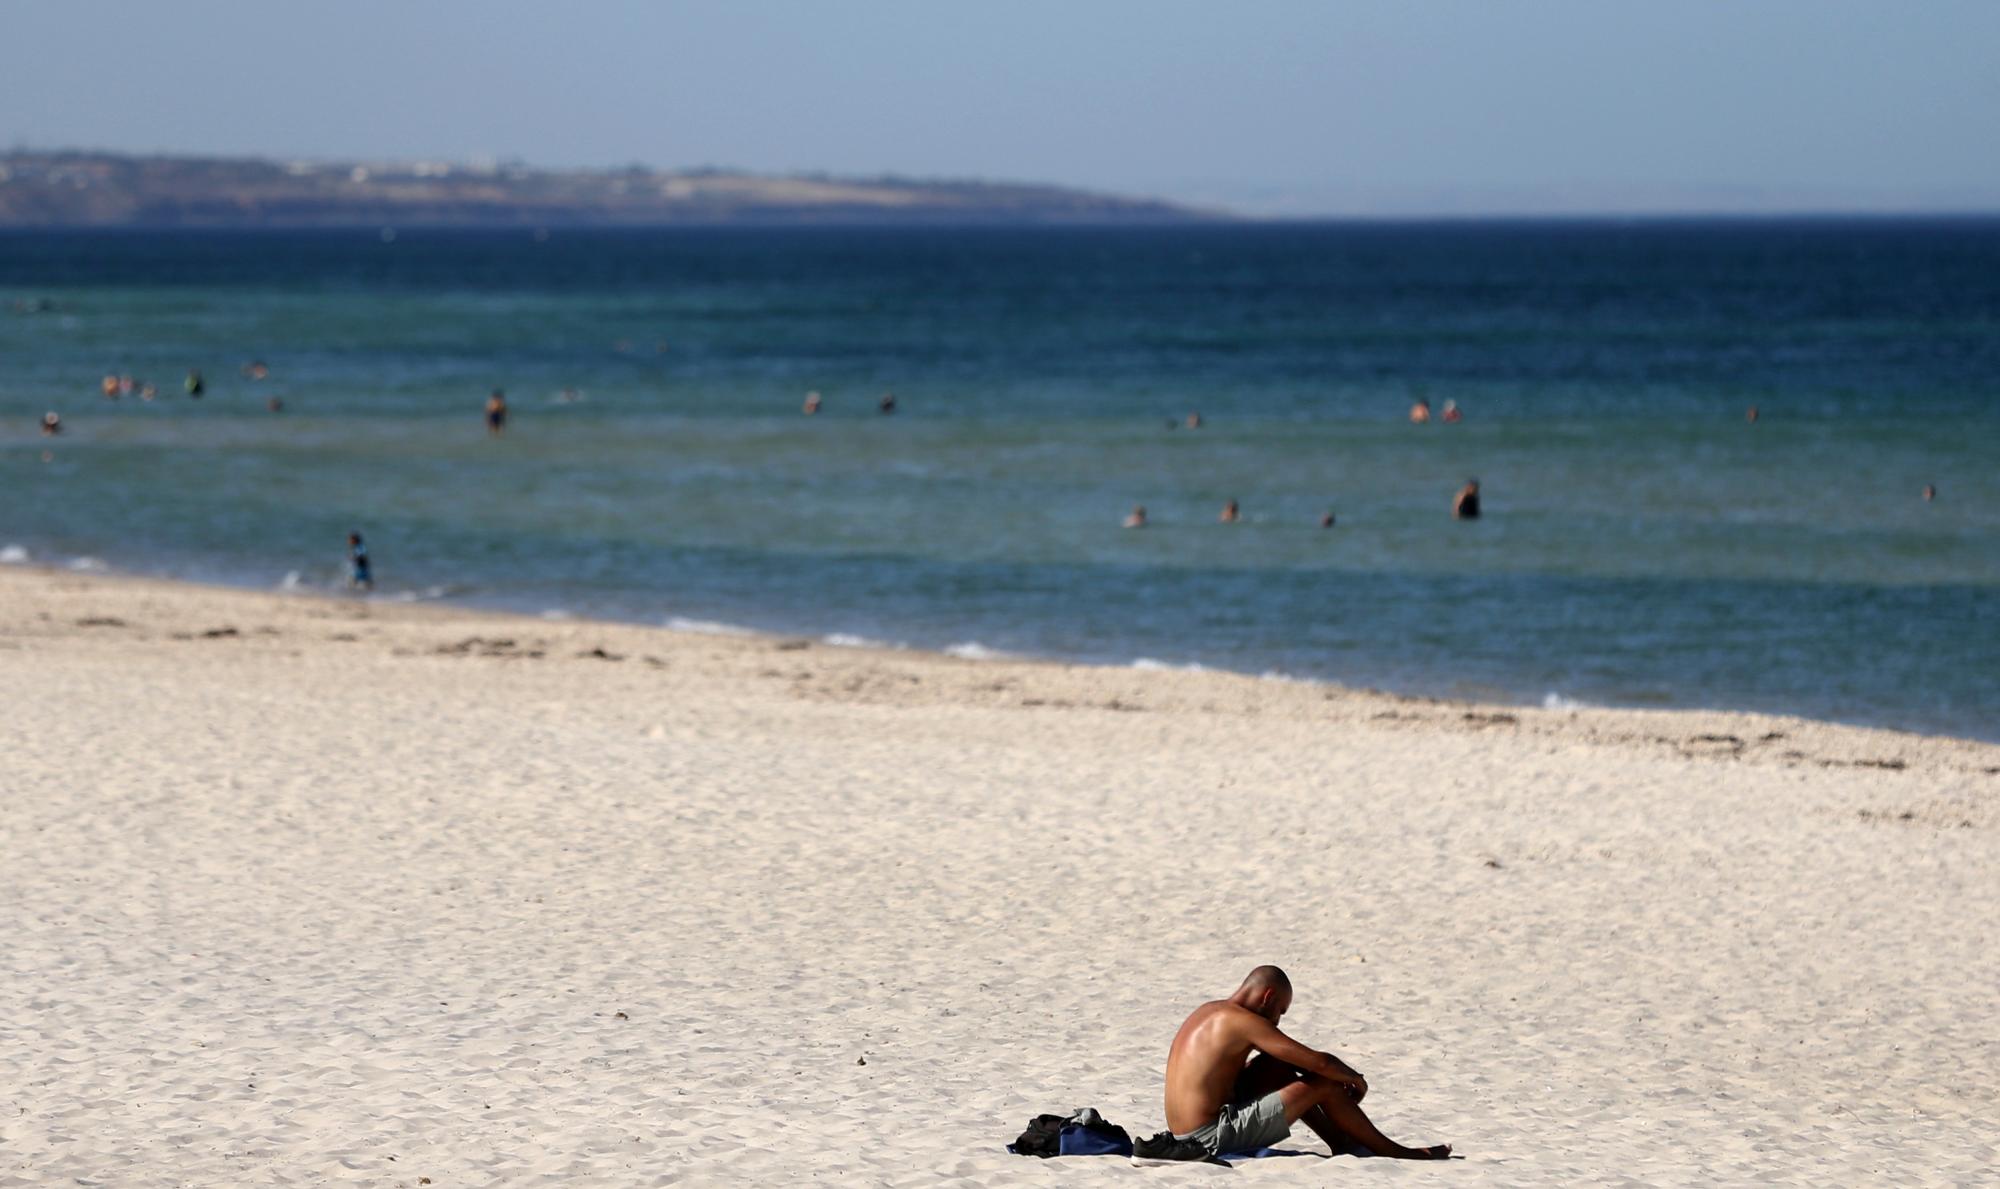 Una persona que va a la playa se sienta al sol en la playa de Glenelg en Adelaide, Australia, el jueves 24 de enero de 2019. Adelaide alcanzó la temperatura más alta registrada en una ciudad australiana el jueves, alcanzando los 46.6 grados Celsius (115.9 grados Fahrenheit) a medida que la nación reseca por la sequía se dirige hacia el potencialmente más caluroso enero registrado.